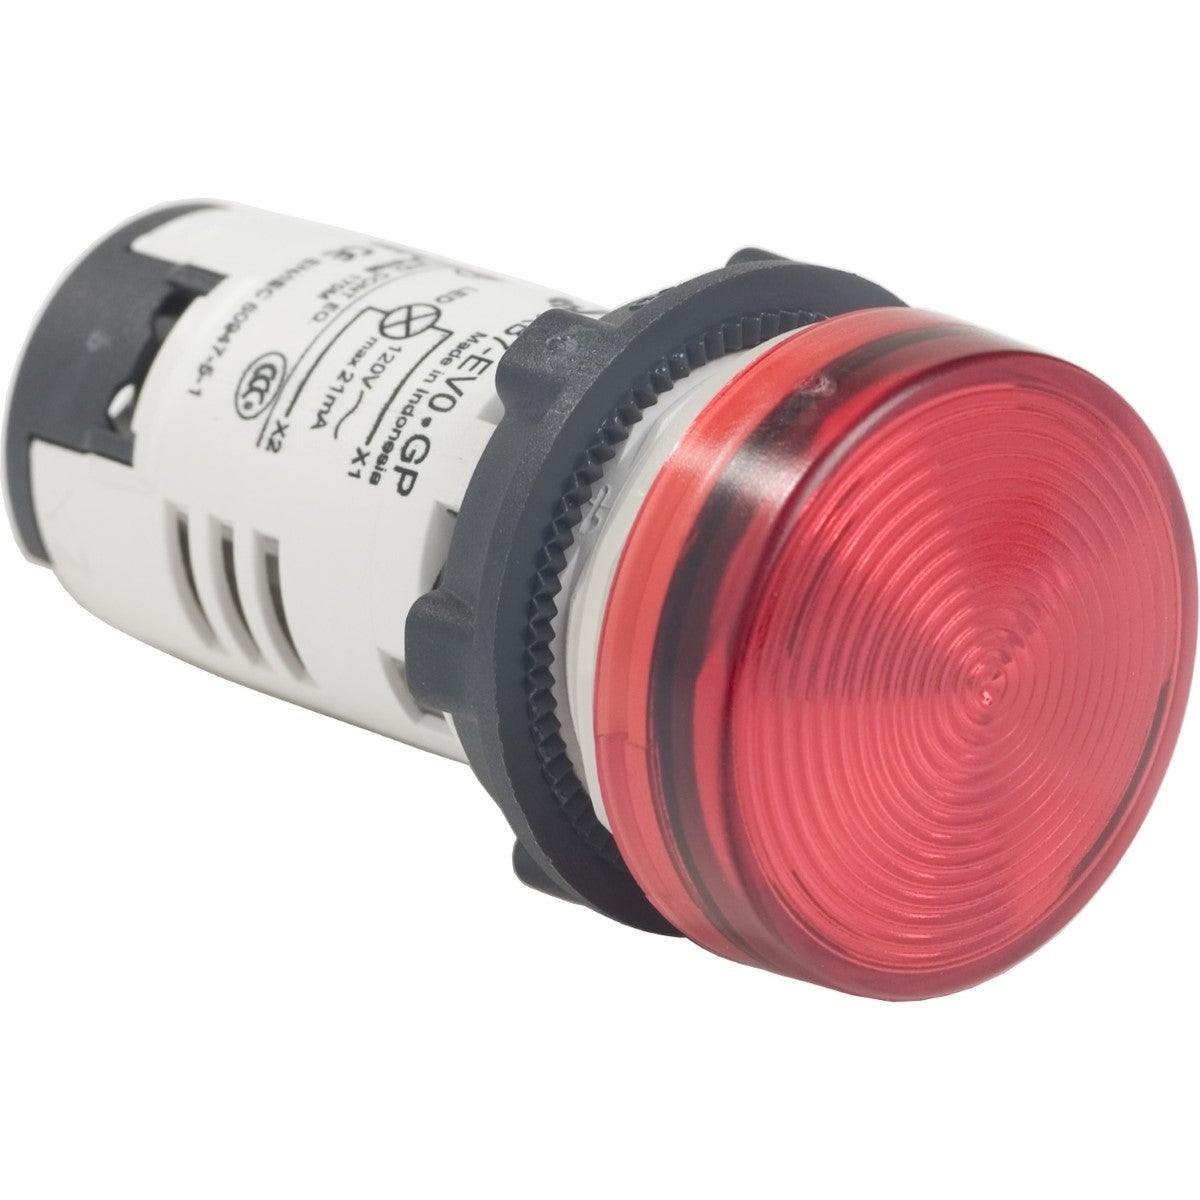 Monolithic pilot light, plastic, red, Ã˜22, integral LED, 110...120 V AC